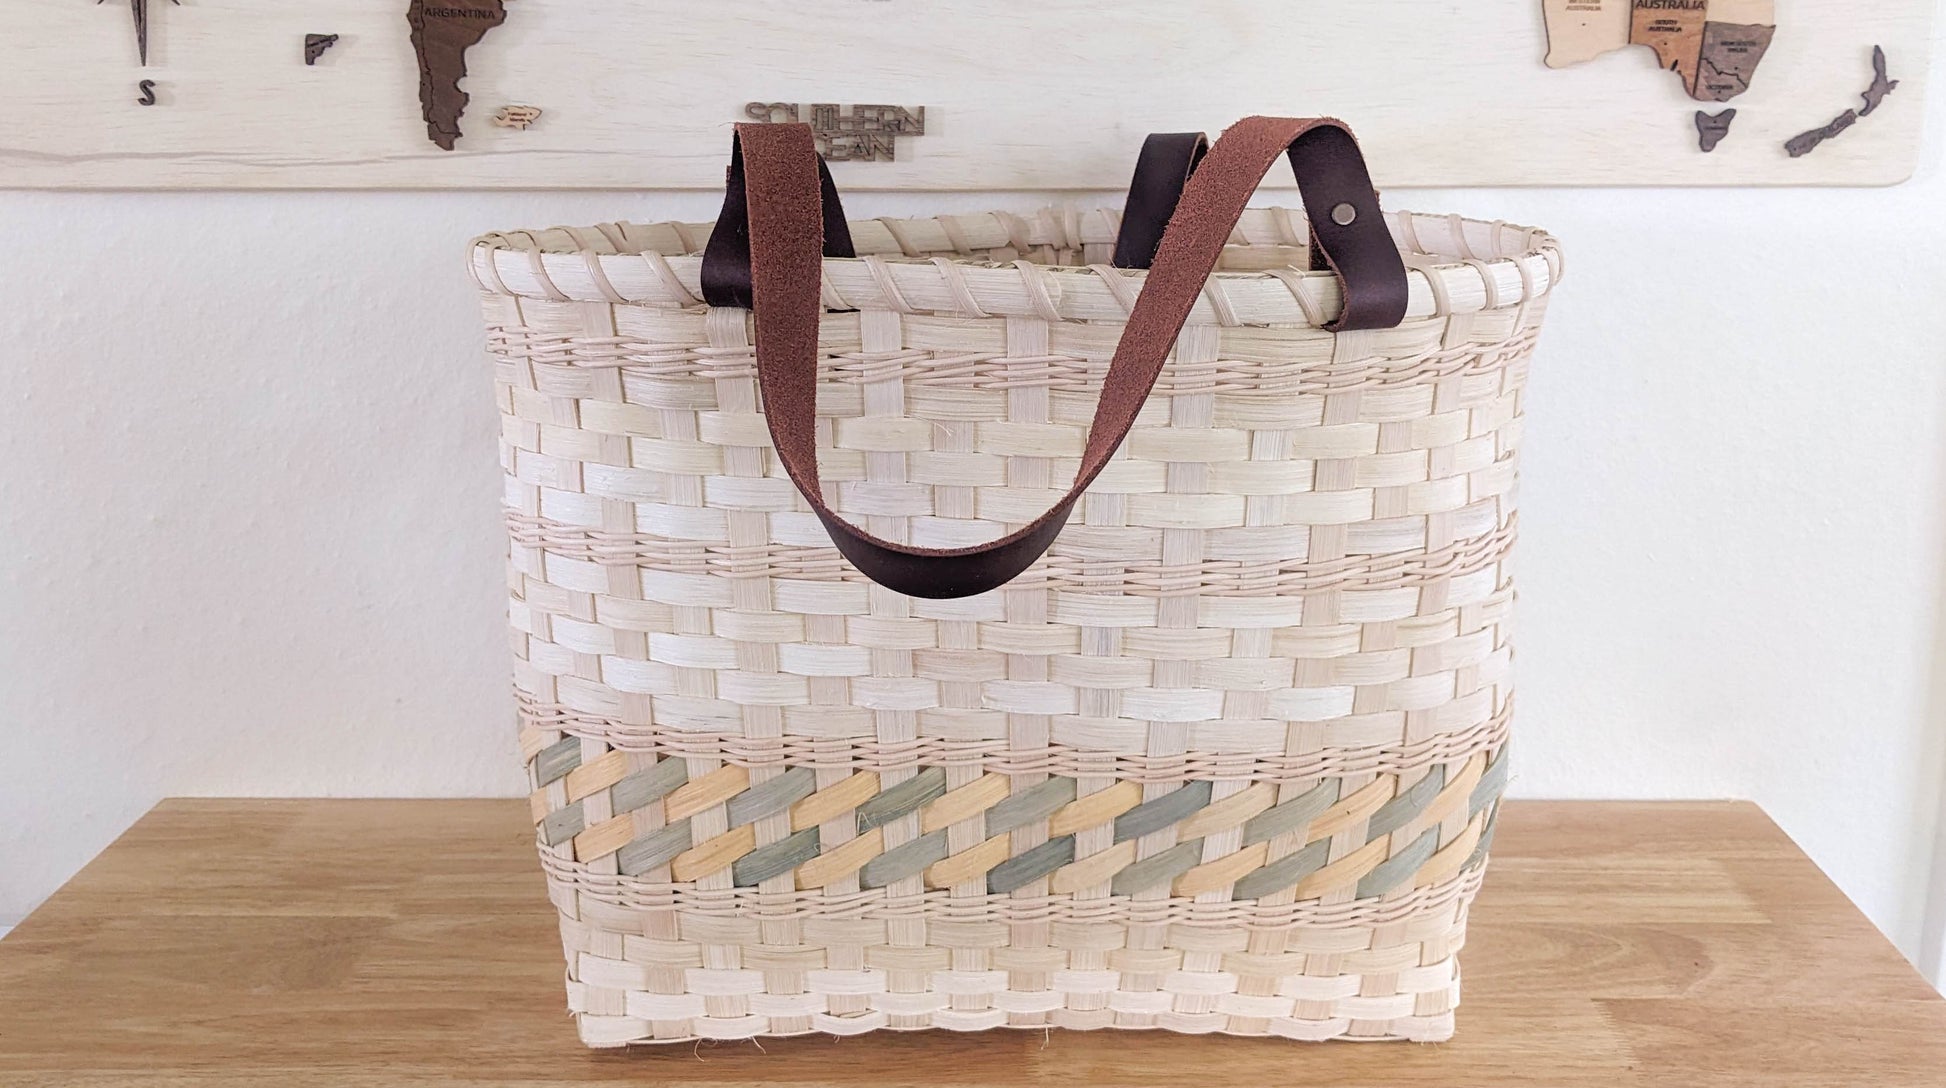 Randed Tote Basket Weaving Kit - Textile Indie 